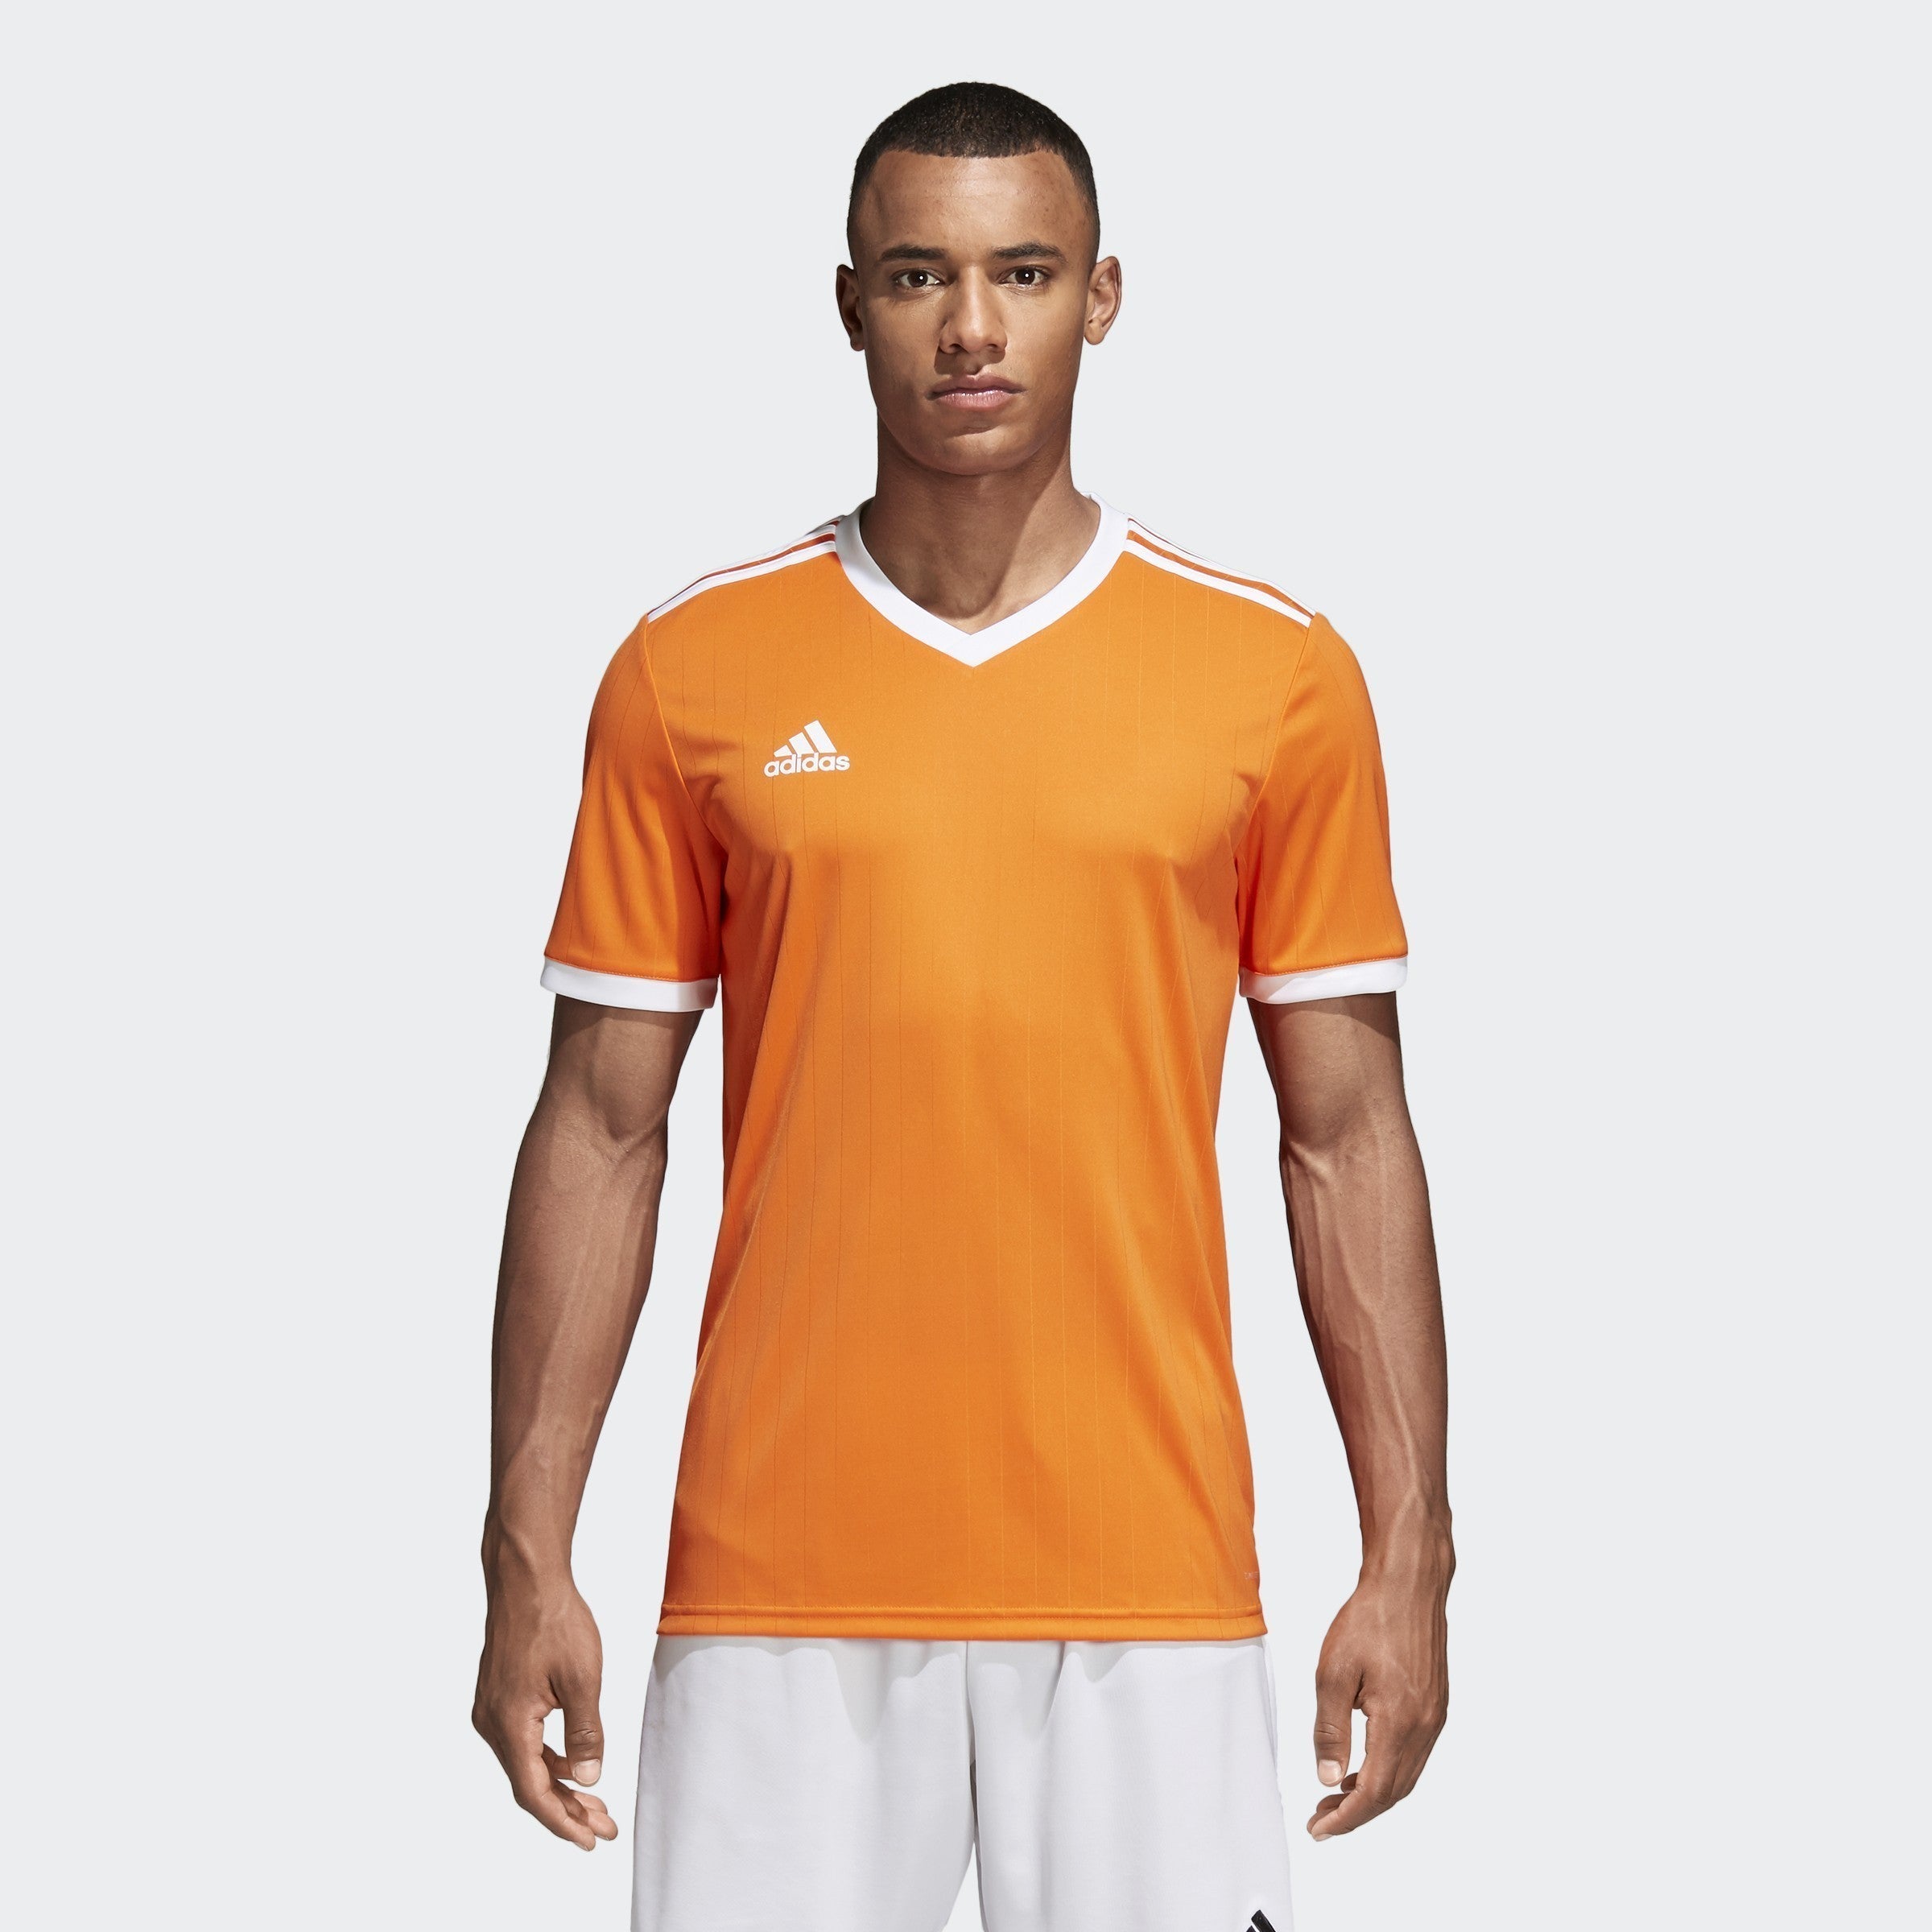 adidas Men's Jersey - Orange